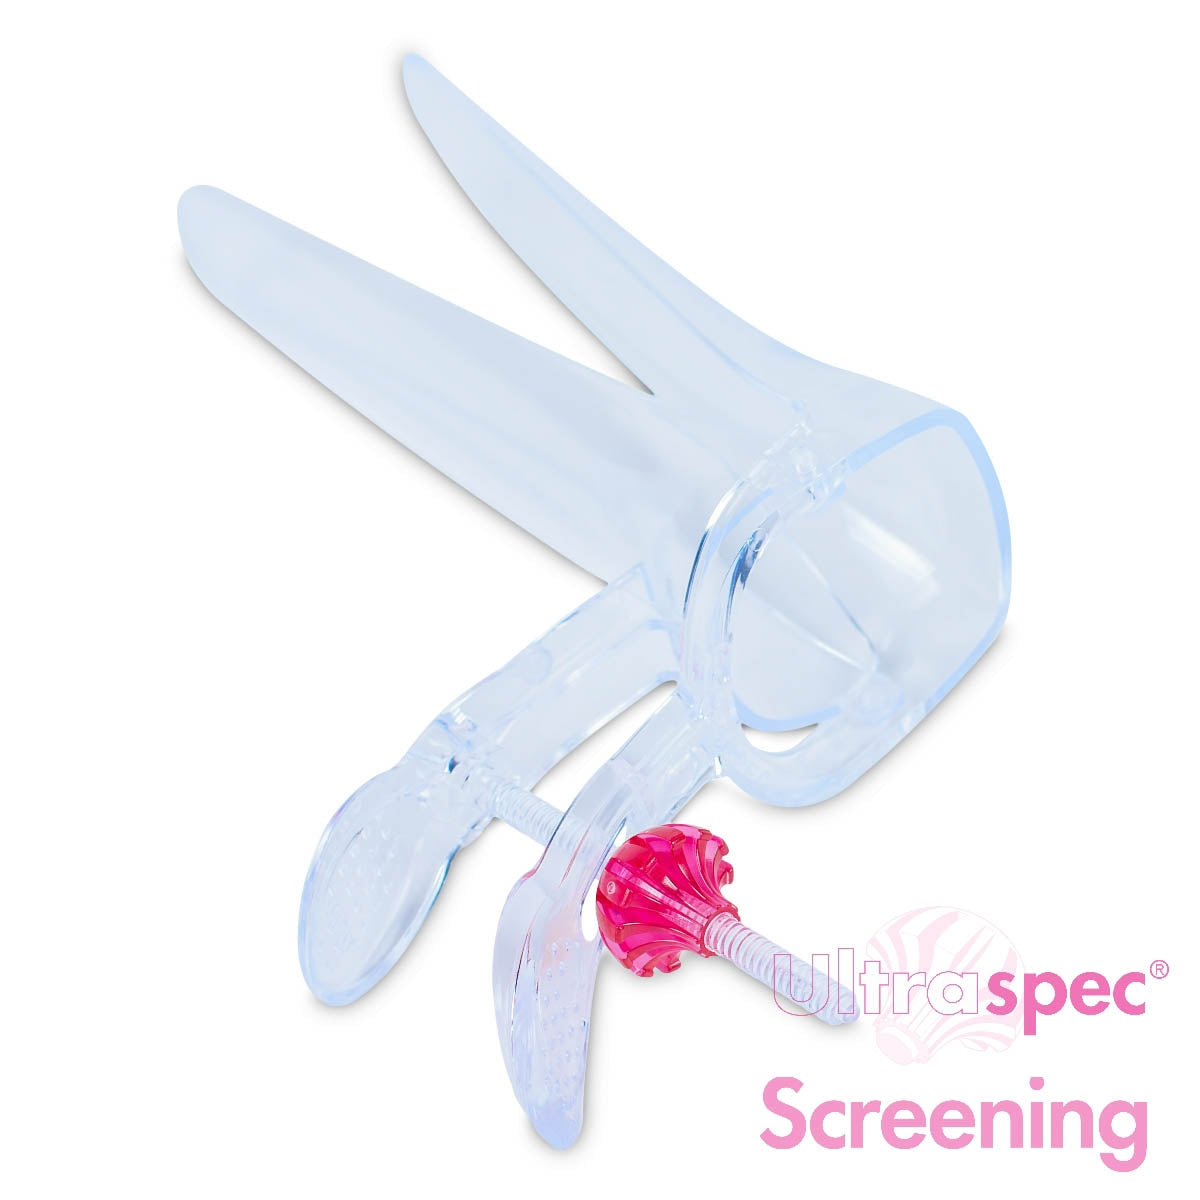 Ultraspec® Screening Speculum - Medium - Pack Of 25